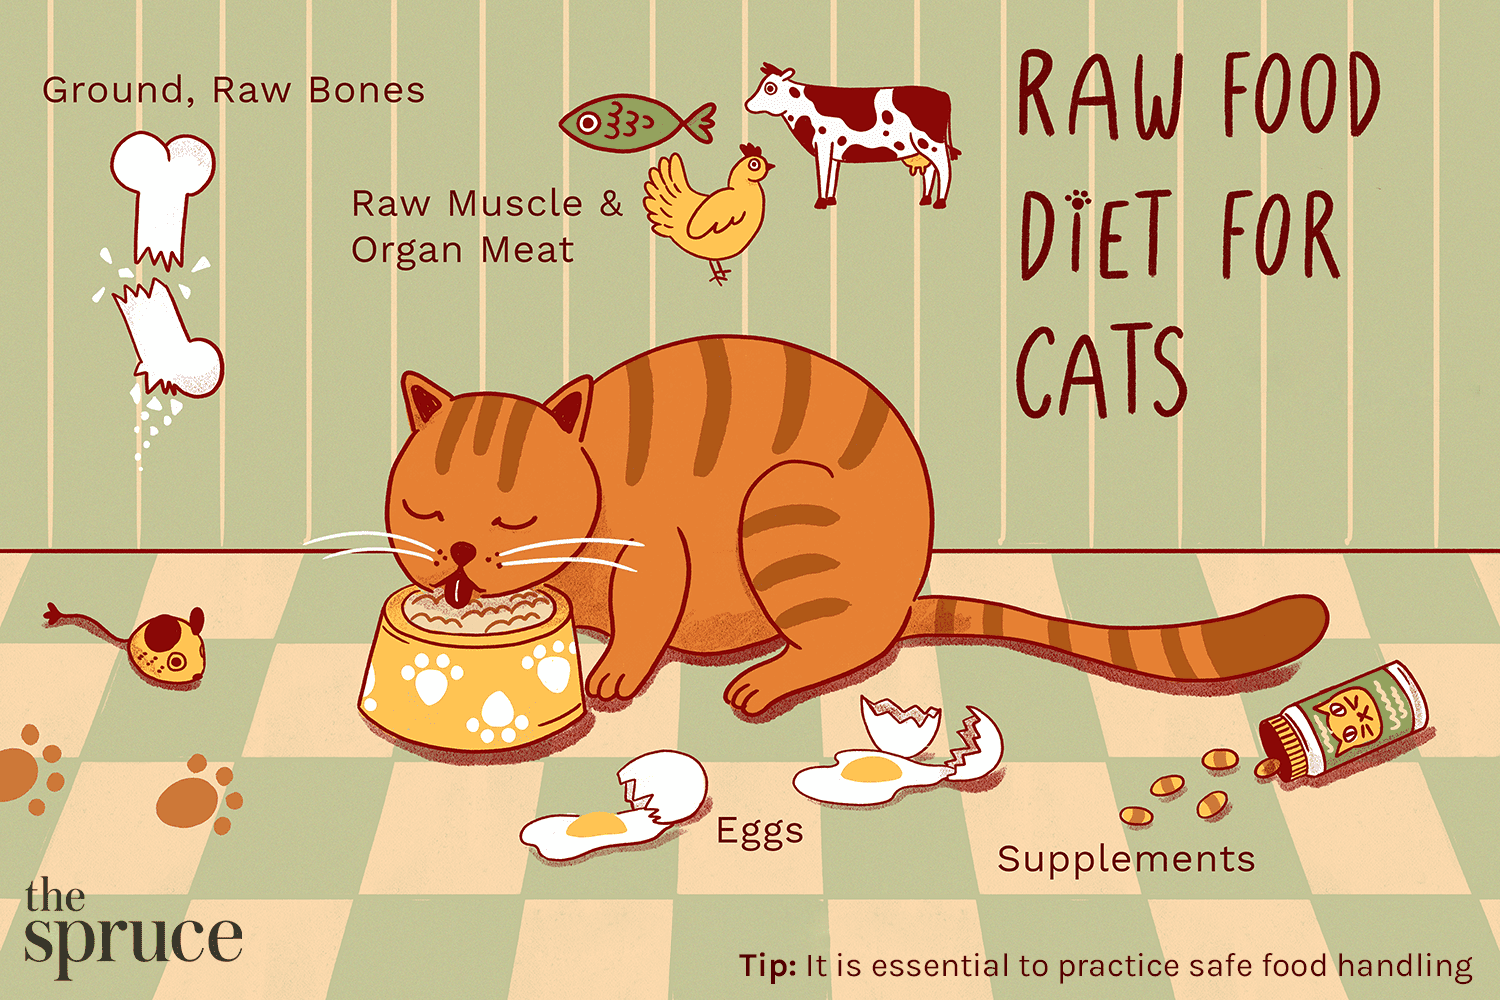 Měli byste krmit svou kočku syrovou stravou?